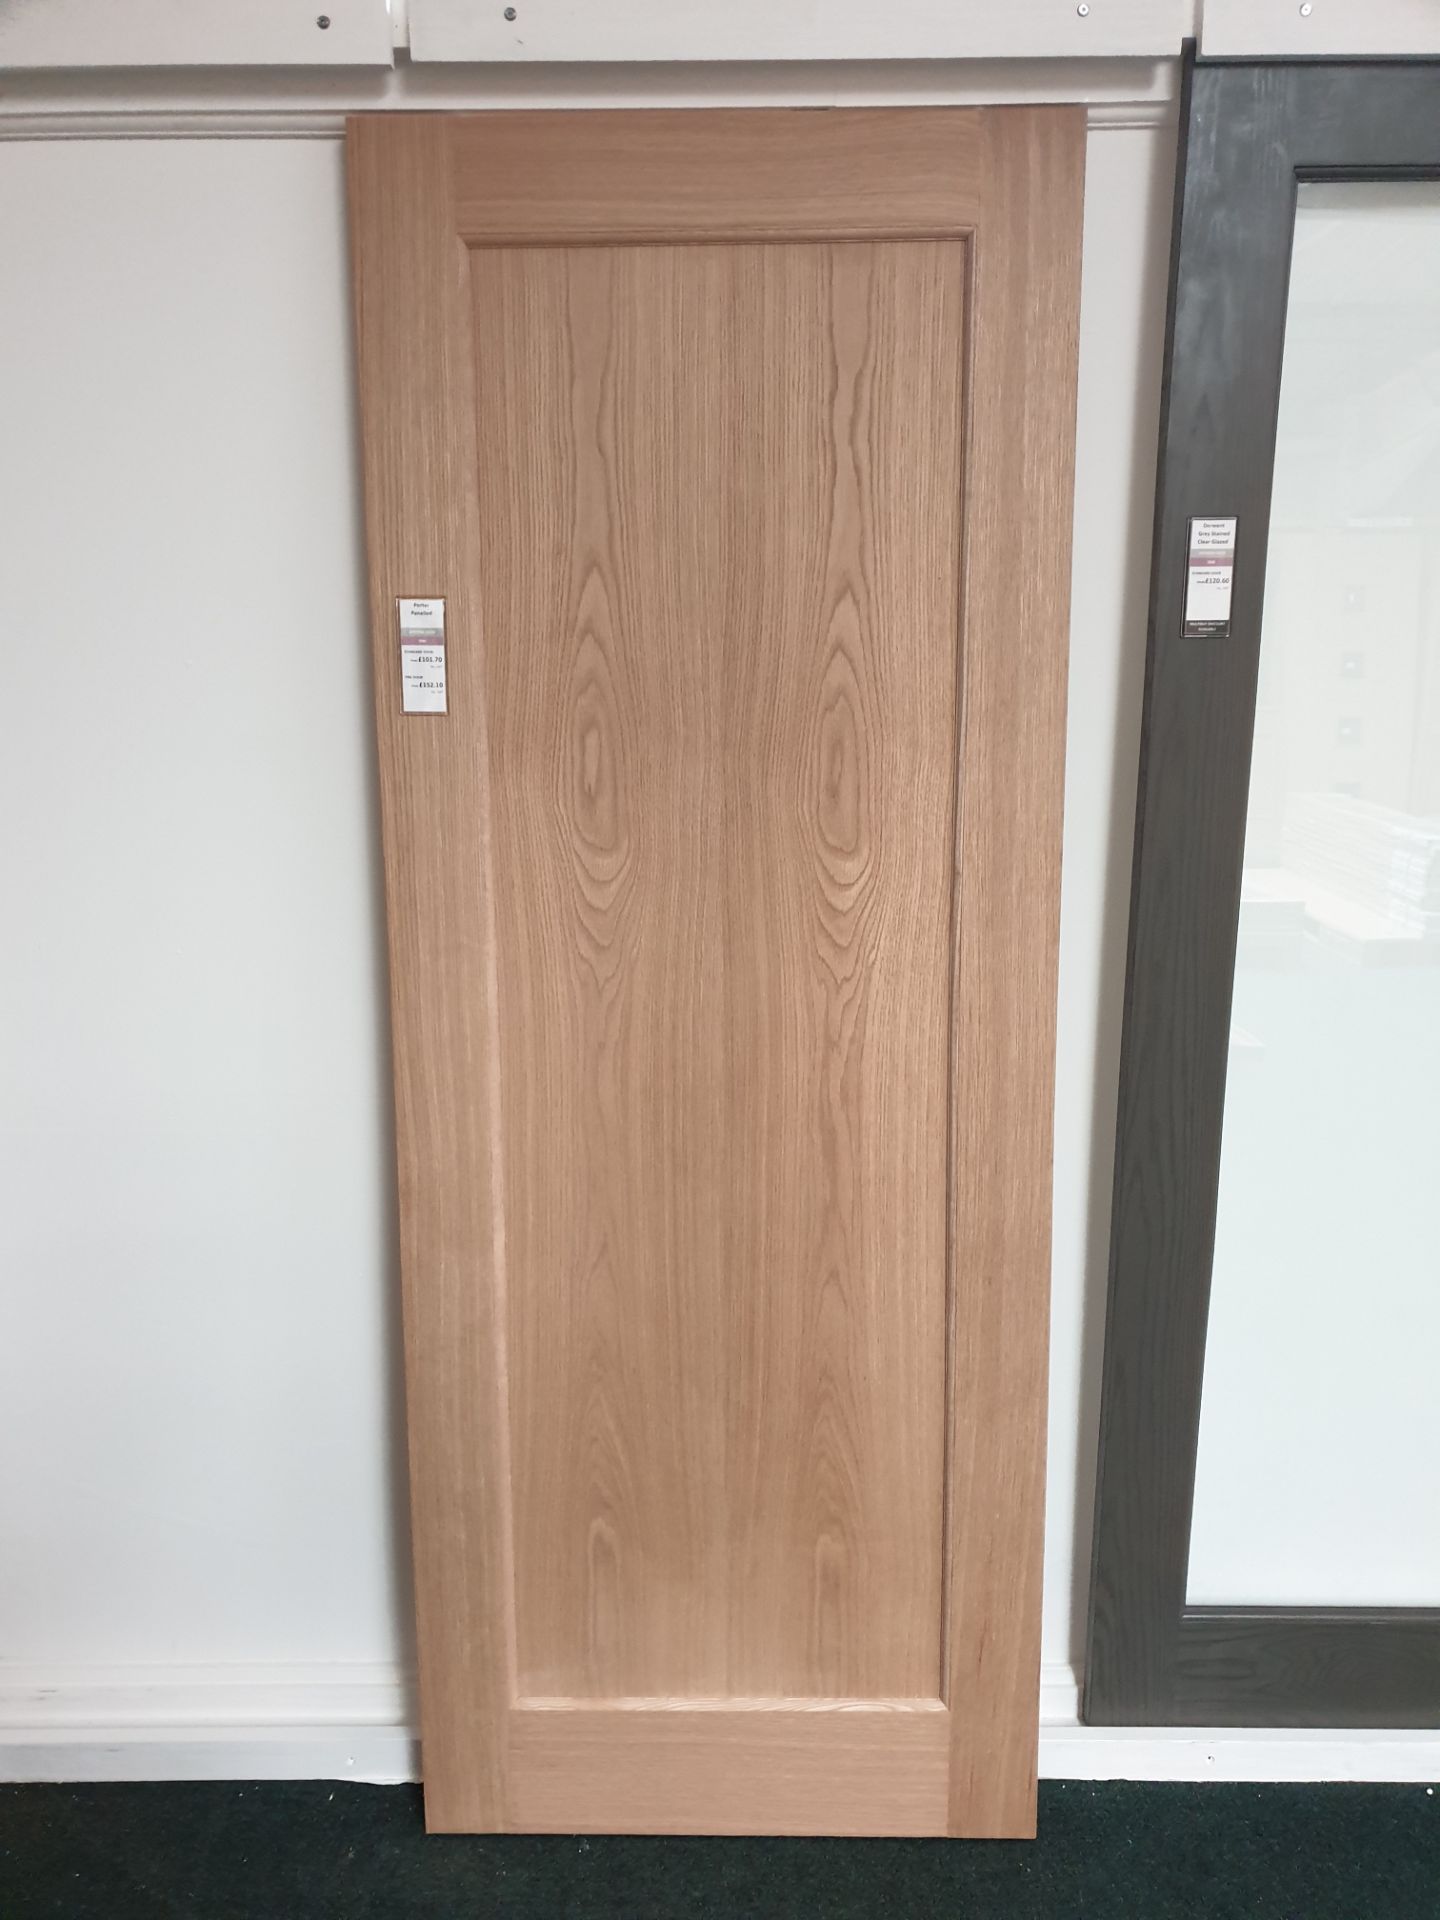 5 x Porter Flat Panel AWOPORT23 78”x23”x35mm Internal Door